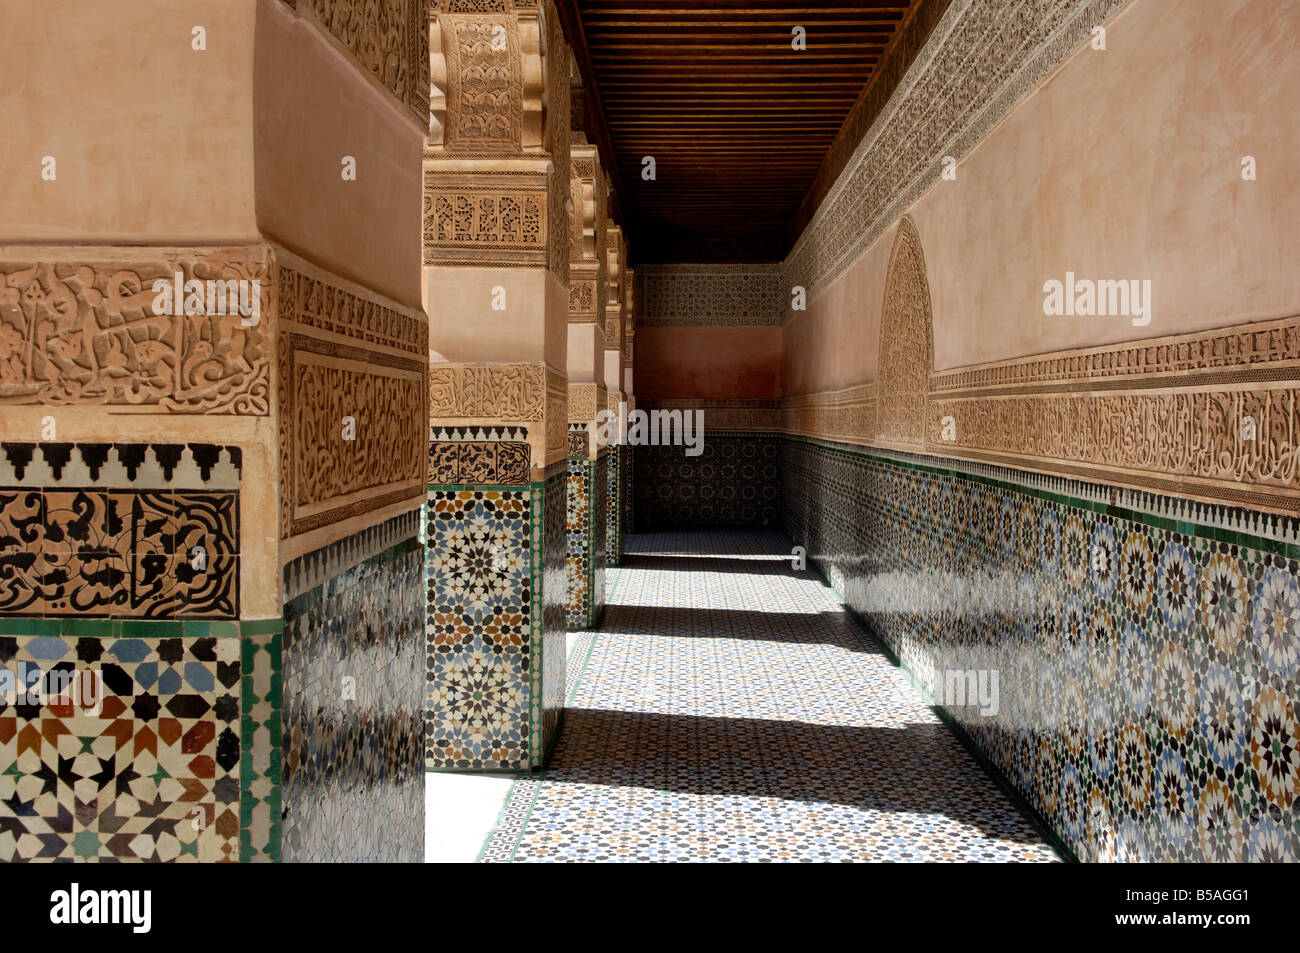 La Medersa Ben Youssef, ricamente decorado en mármol, madera tallada y yeserías, Medina, Marrakech, Marruecos, África Foto de stock